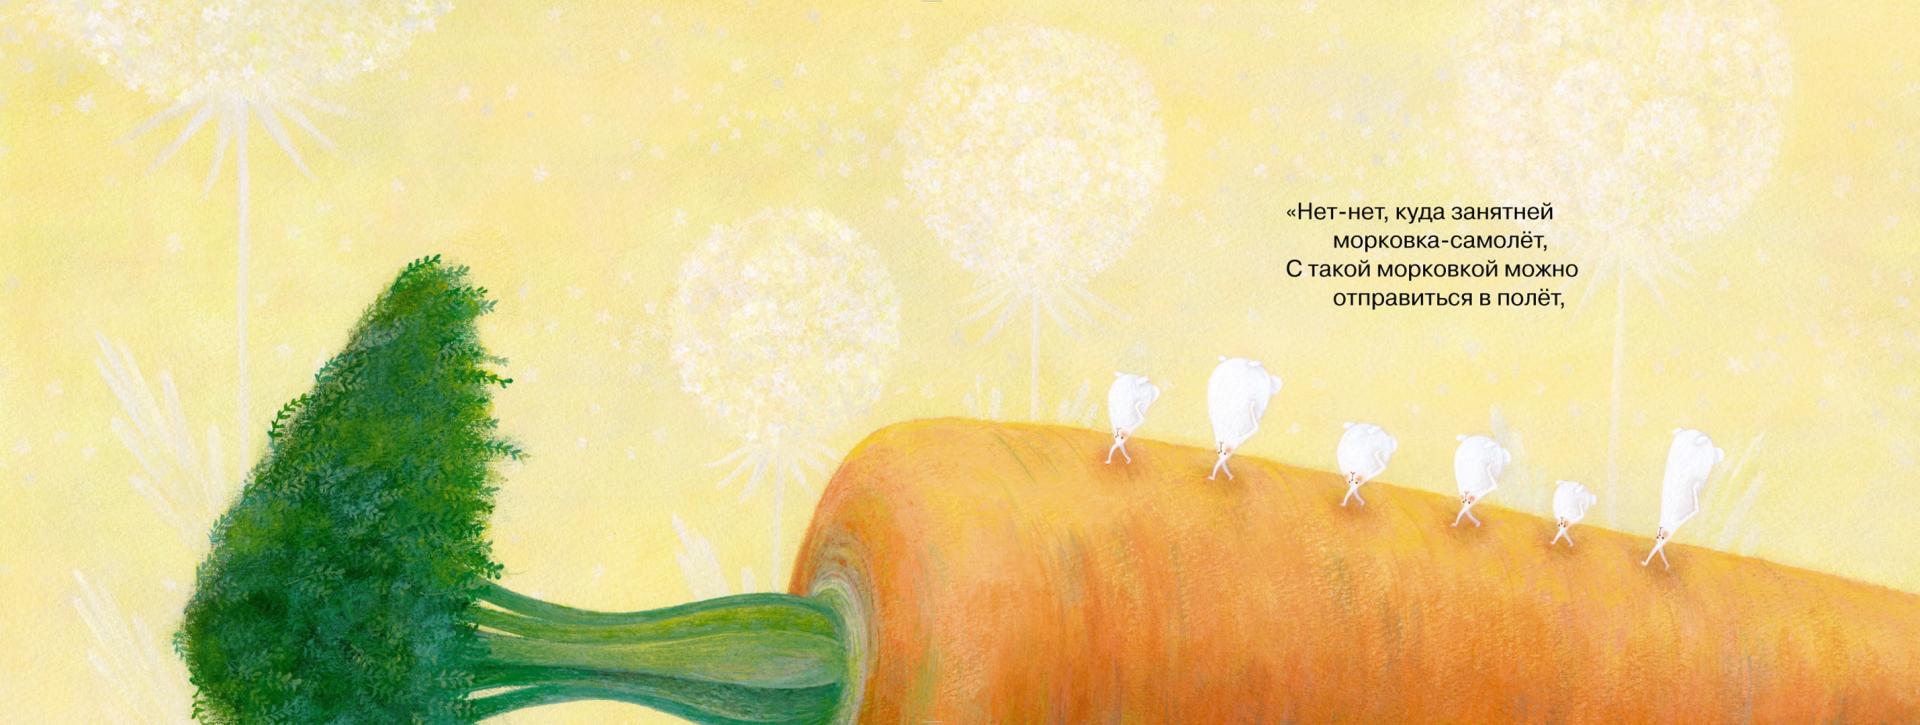 Иллюстрация 1 из 37 для Самая большая морковка - Тоне, Яснов | Лабиринт - книги. Источник: Лабиринт